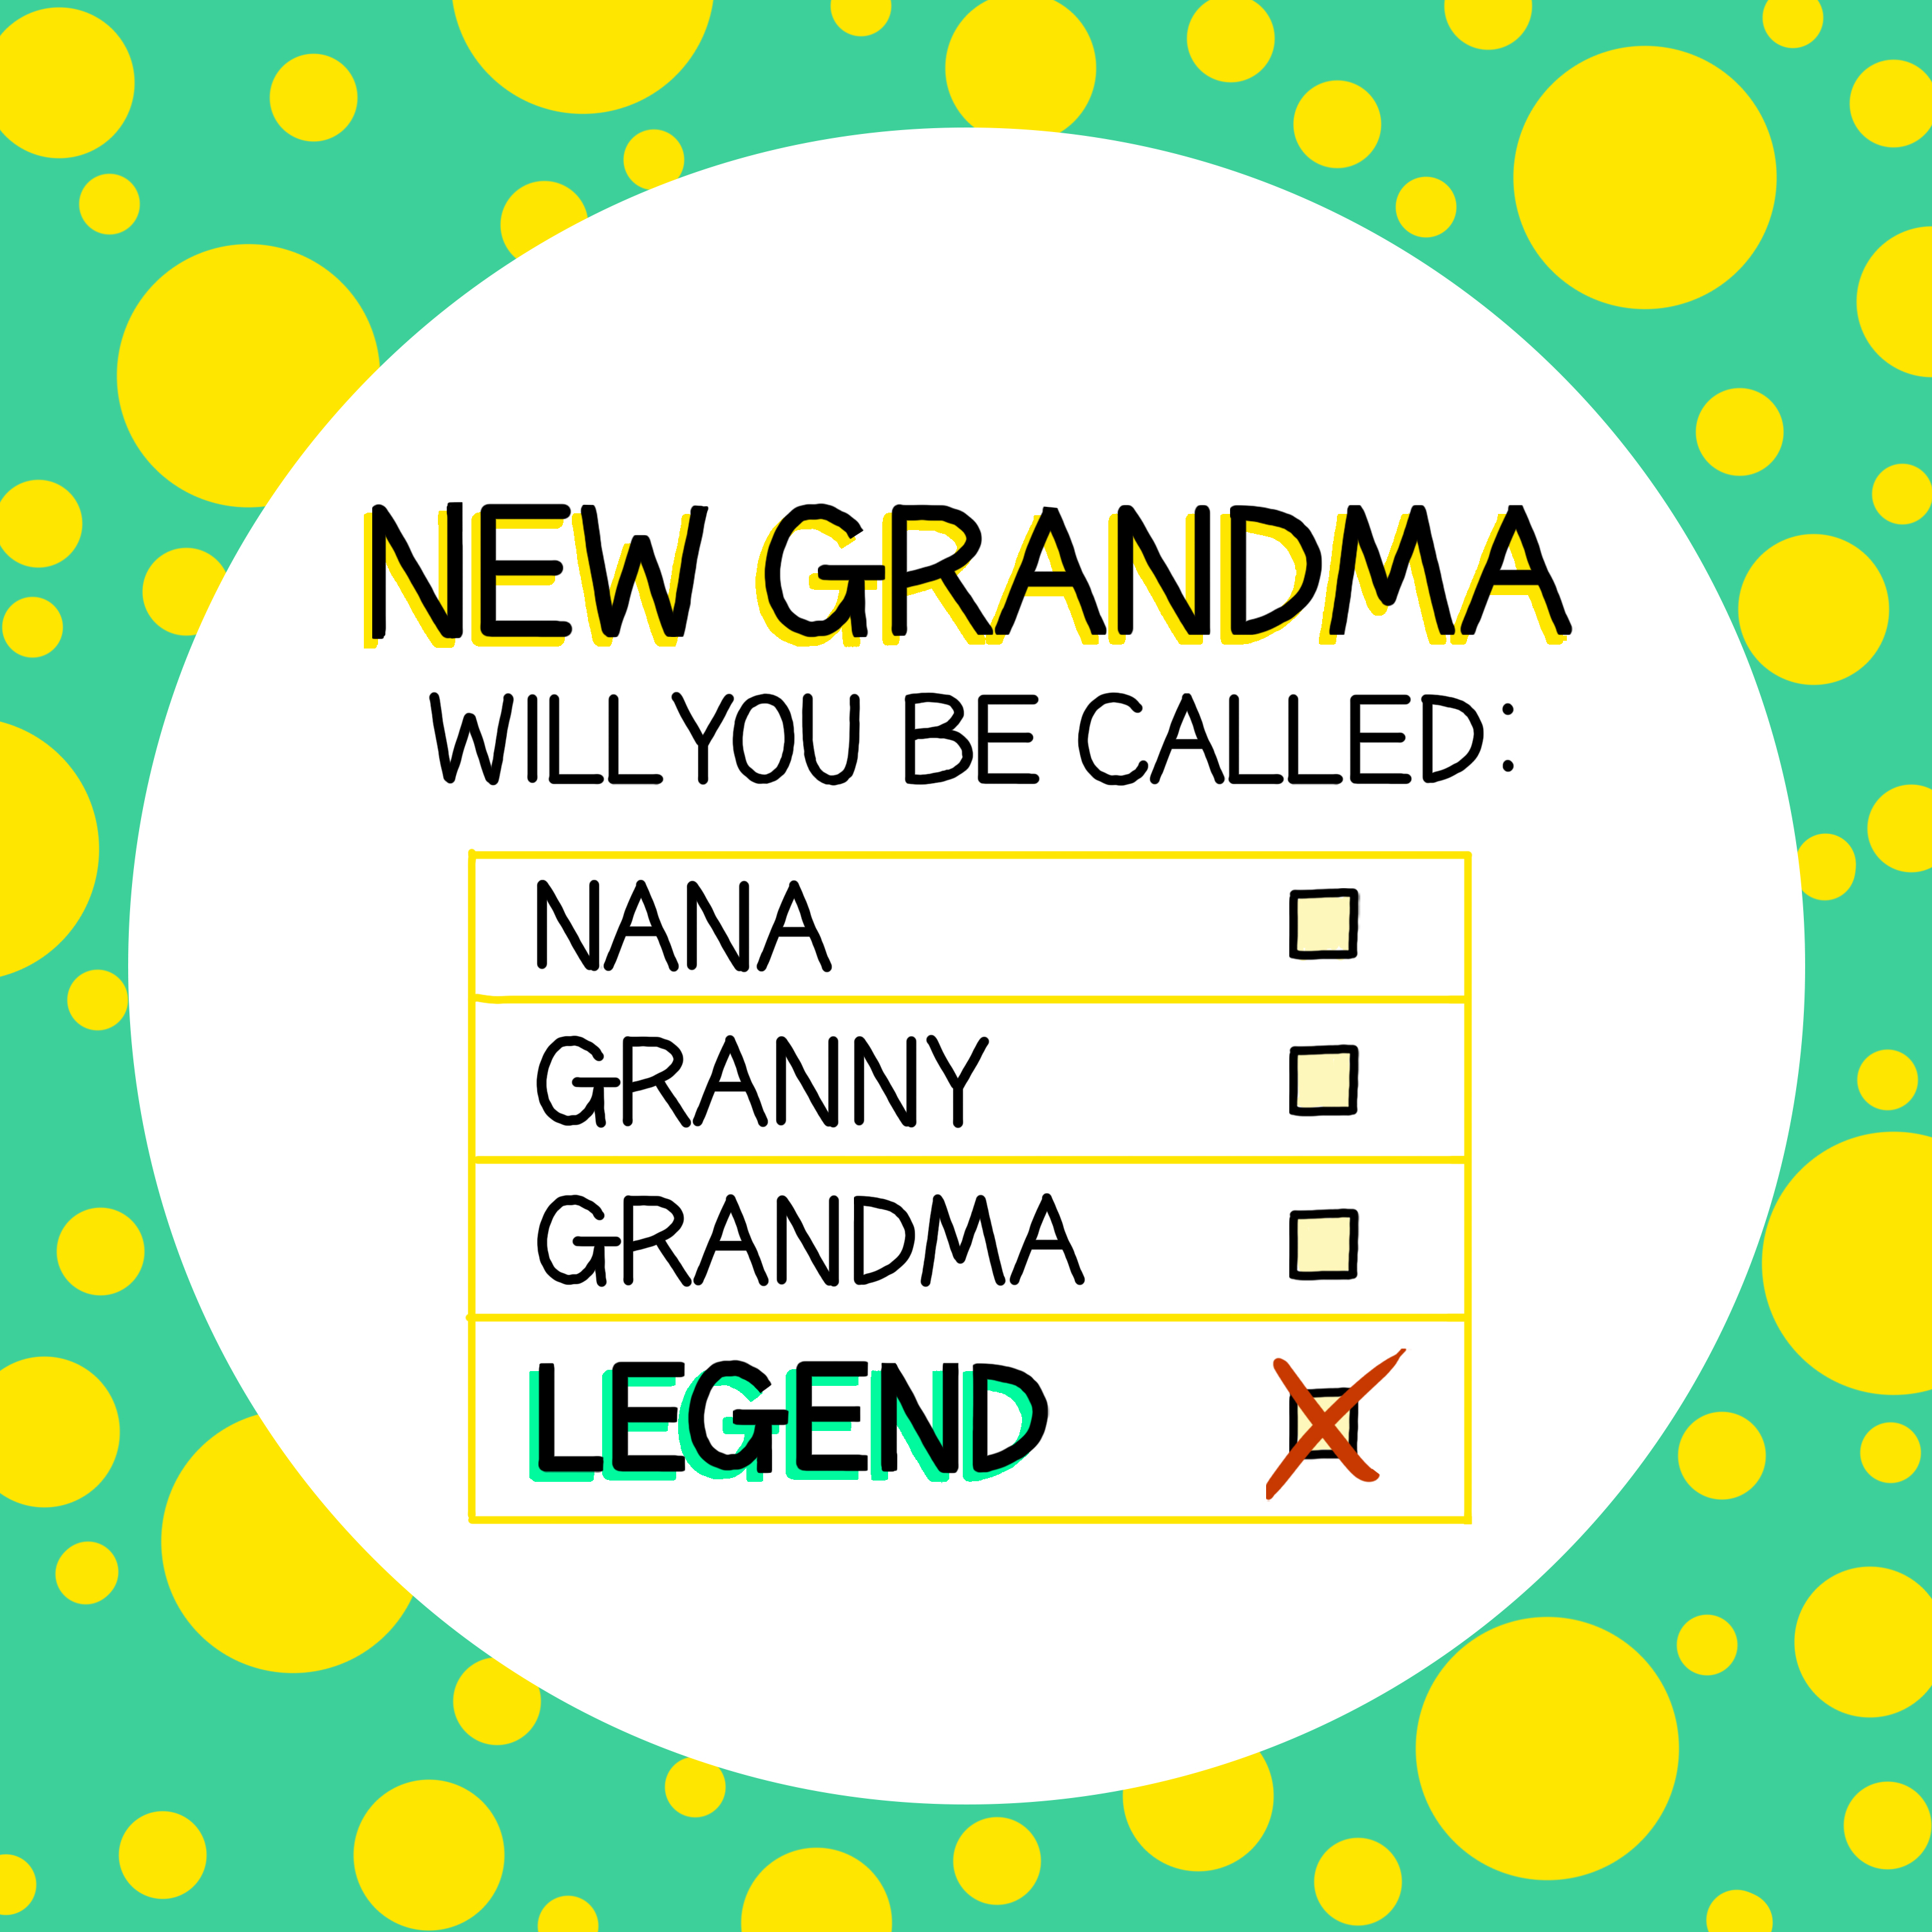 Grandma legend